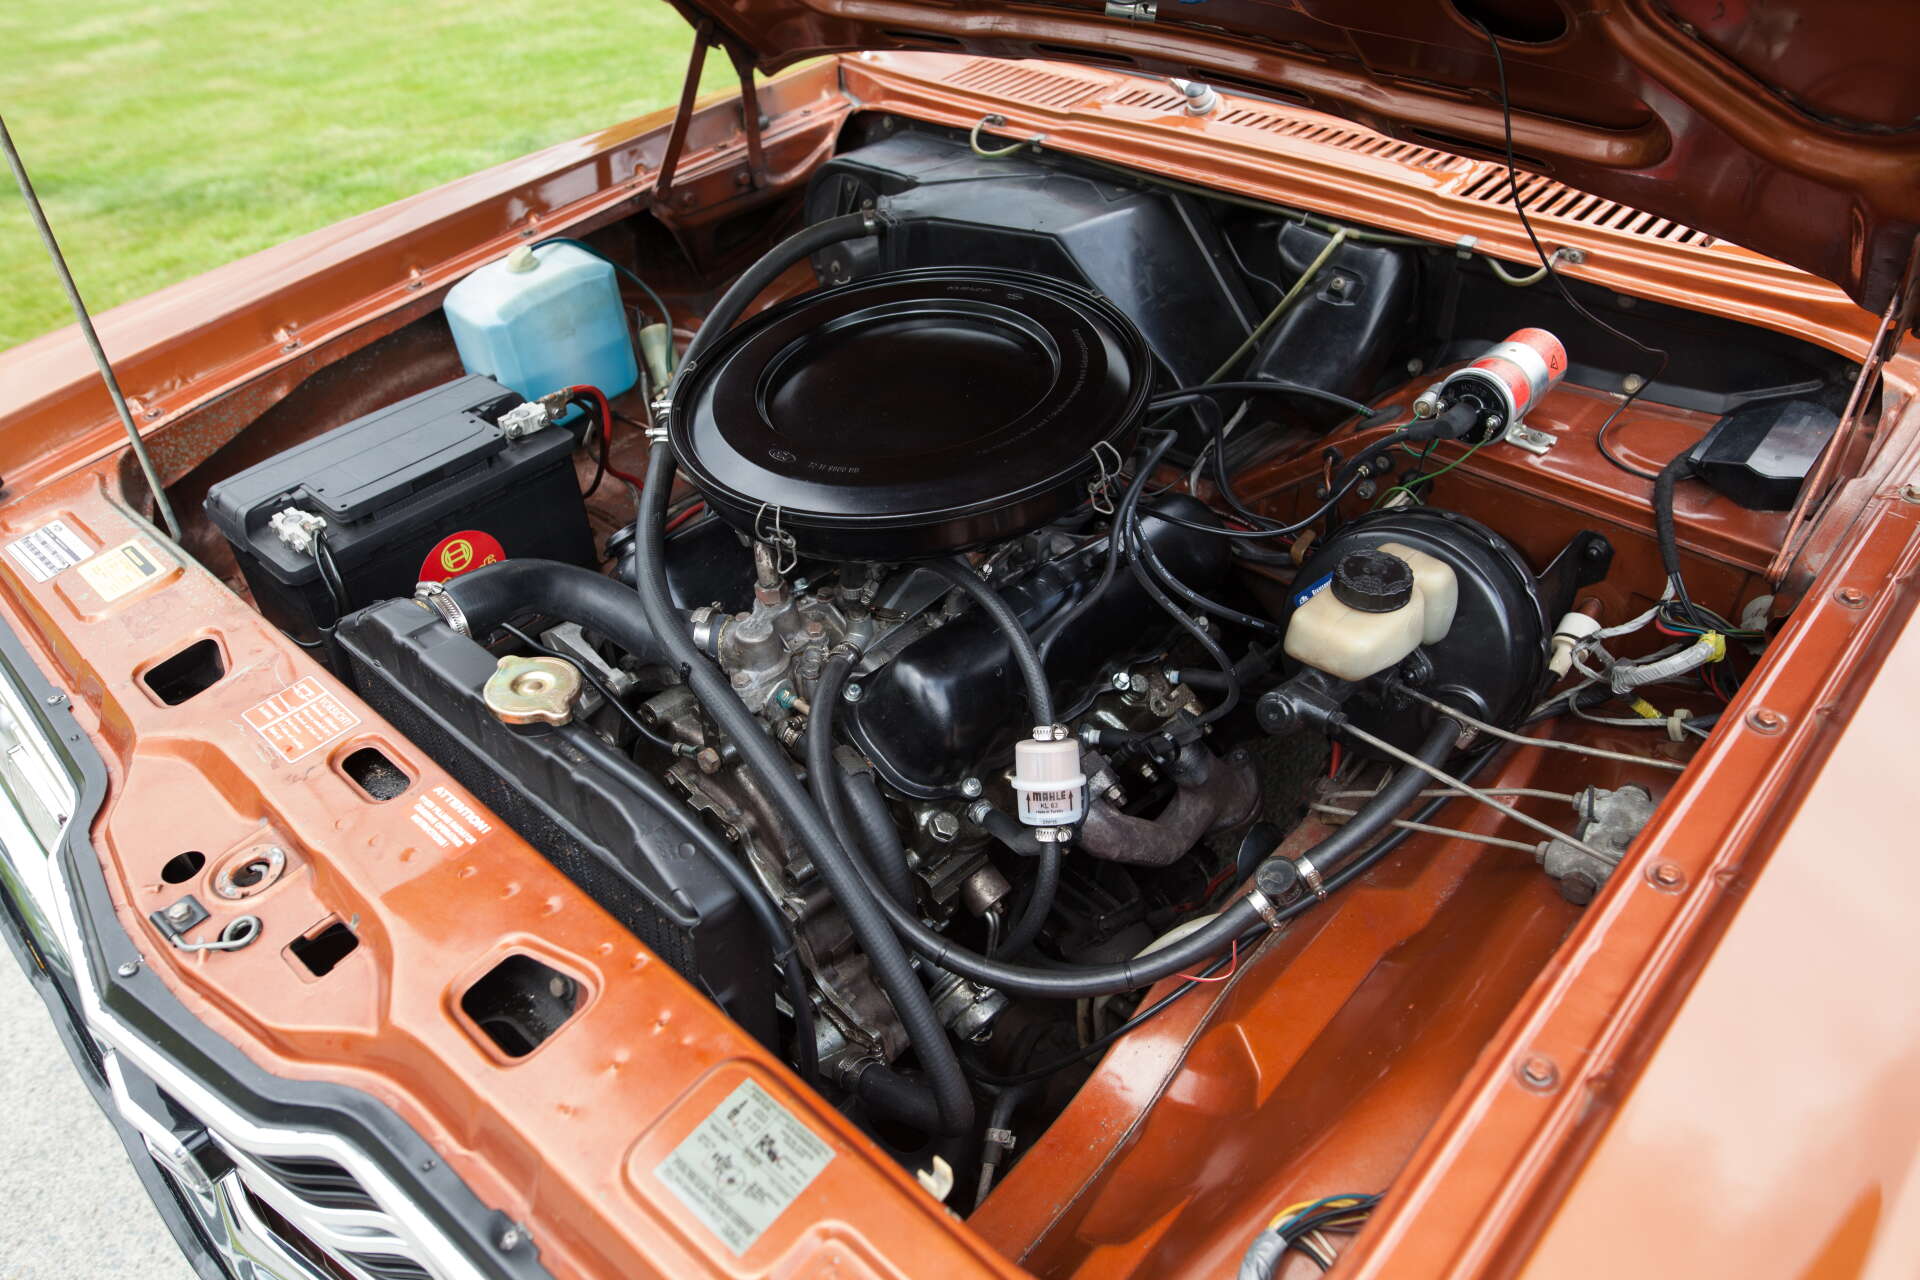 Den två liter stora V6-motorn har skötts om väl under årens lopp.